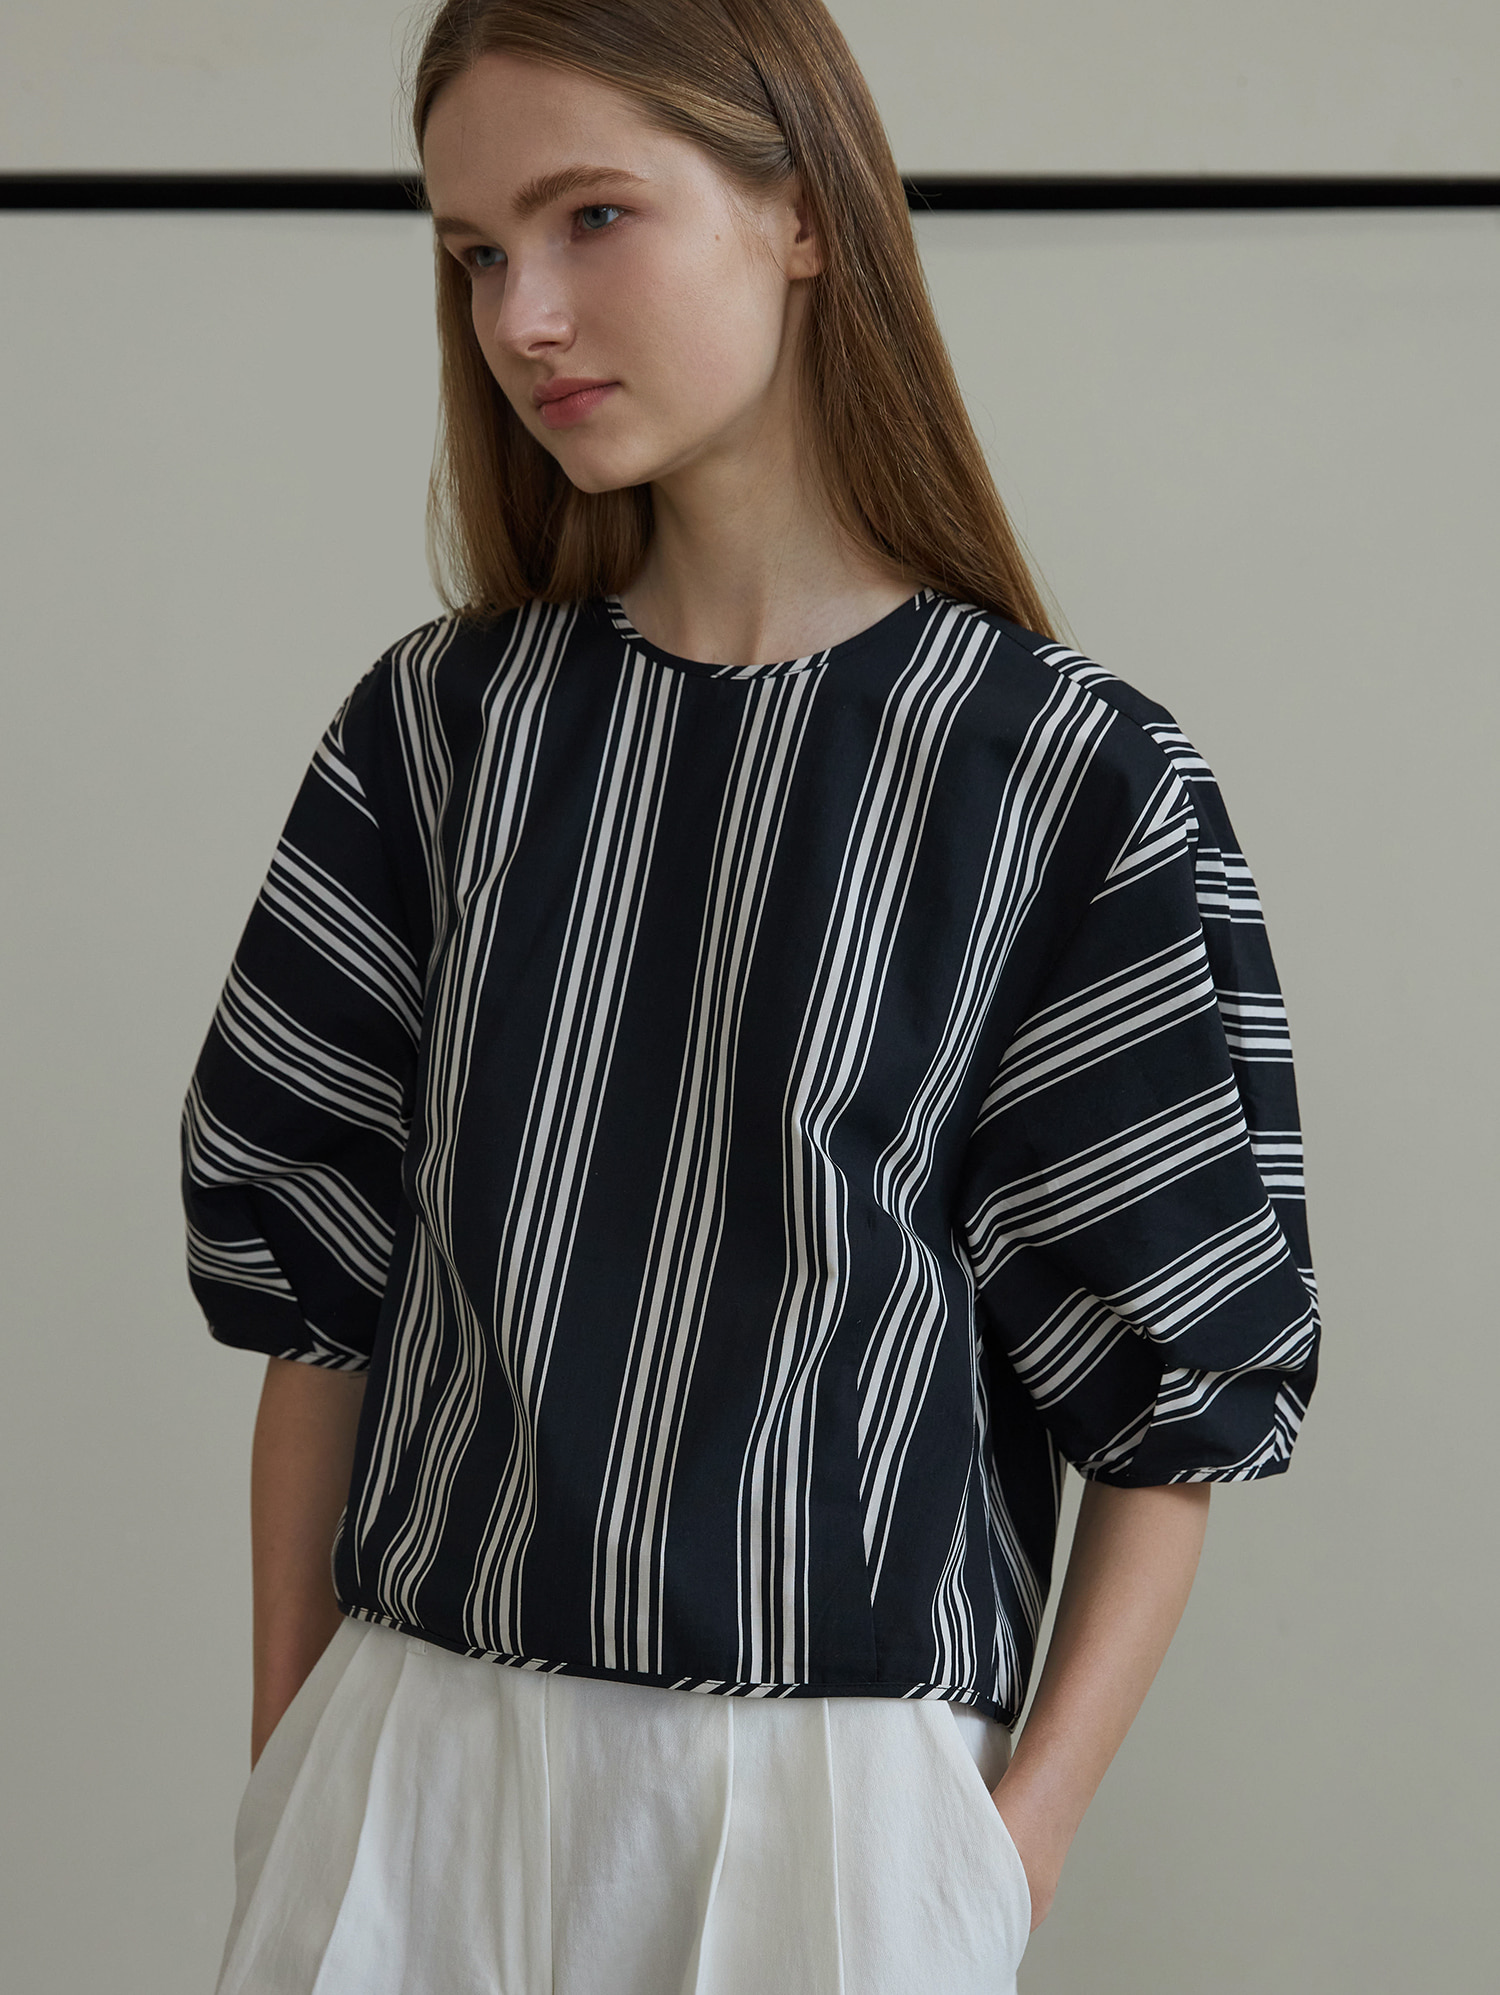 Stripe shot blouse (black)